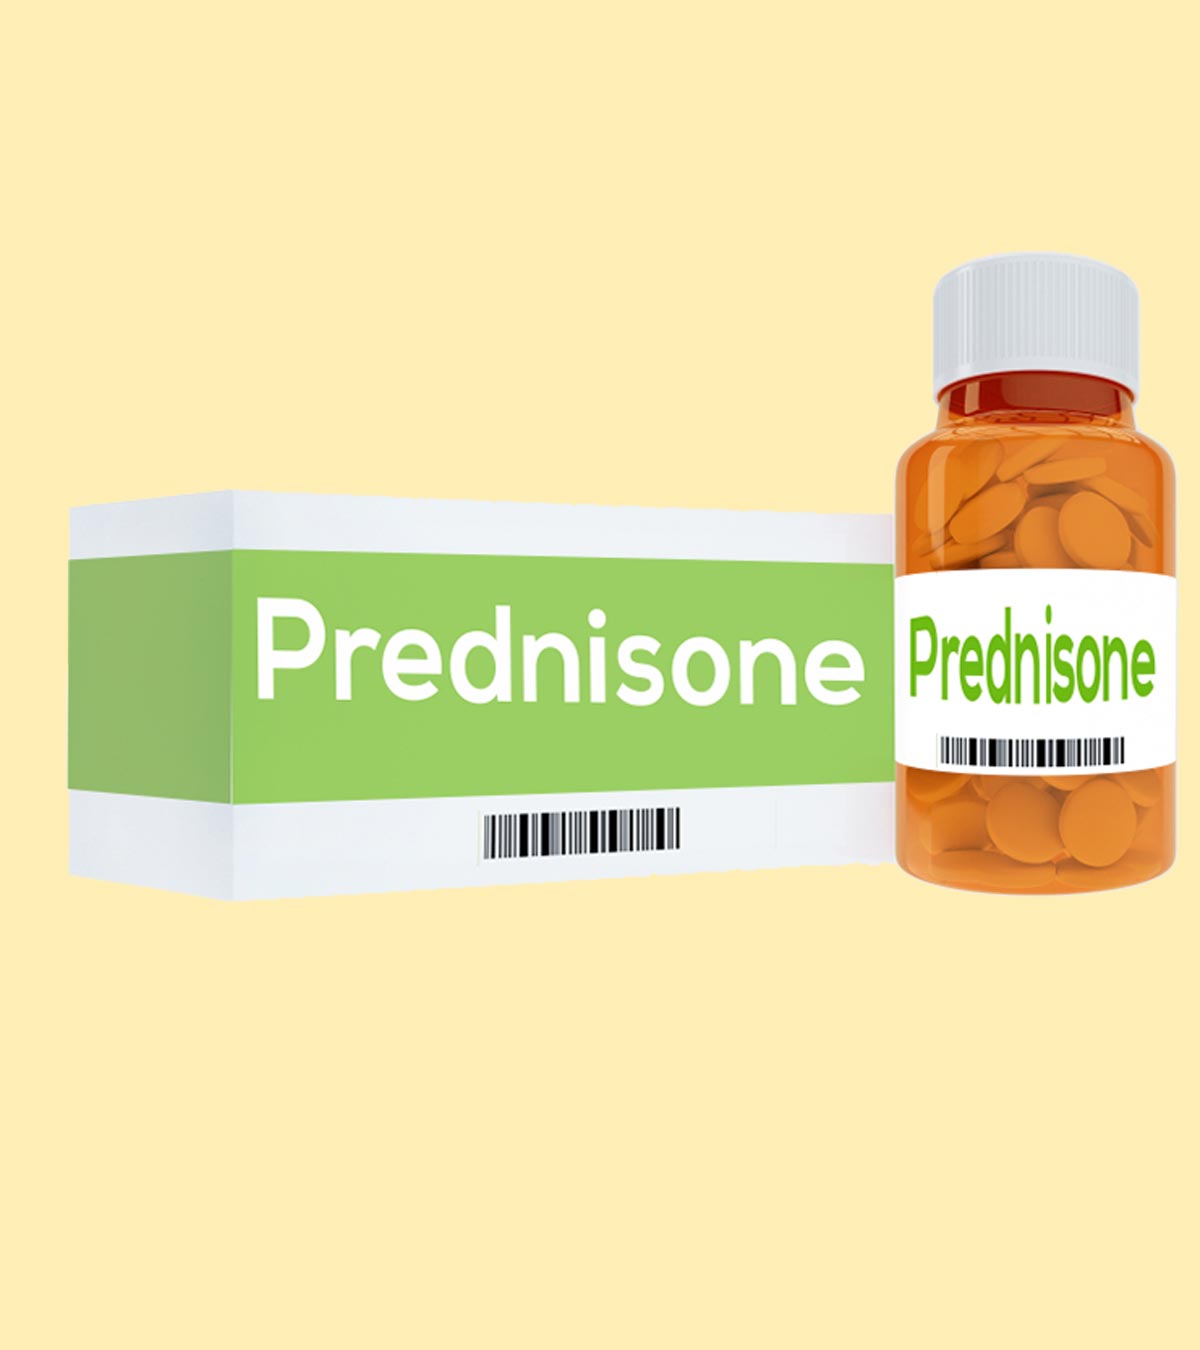 क्याप्रेगनेंसीमेंप्रेडनिसोनटैबलेटखानासुरक्षित है? | Pregnancy Ke Dauran Prednisone Tablet